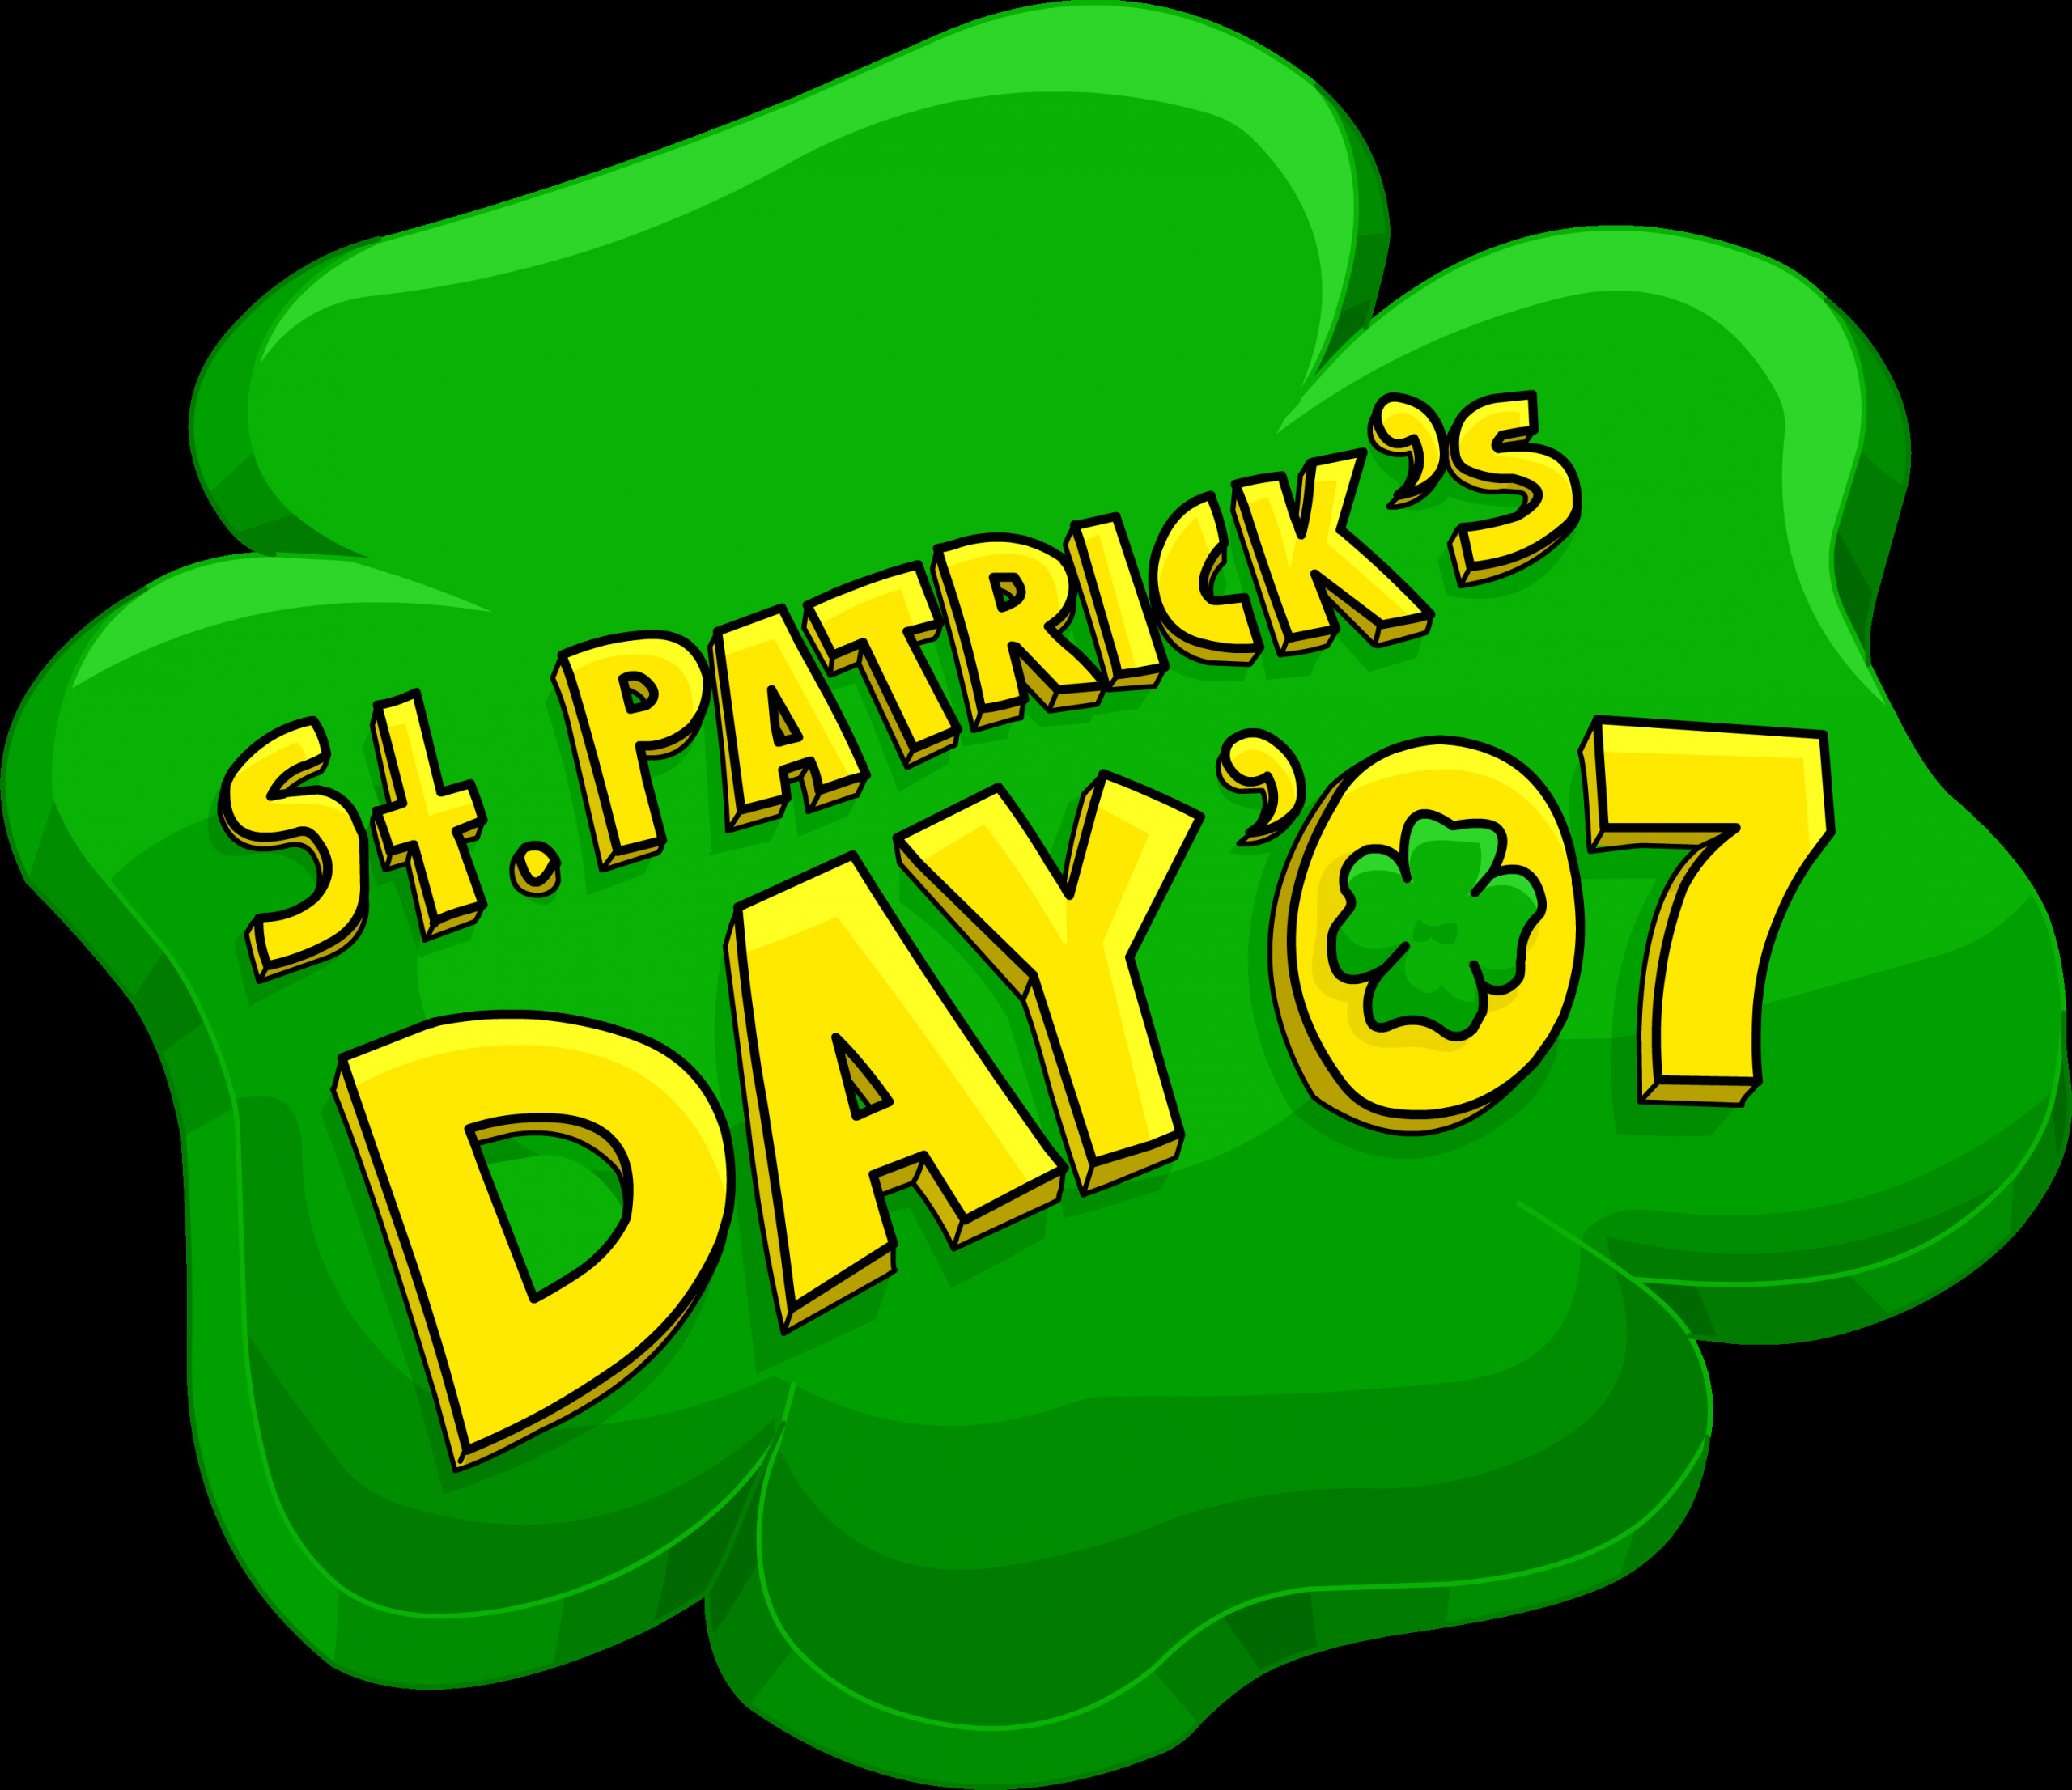 St. Patrick's Day Party
 St Patrick s Day Party 2007 Club Penguin Wiki